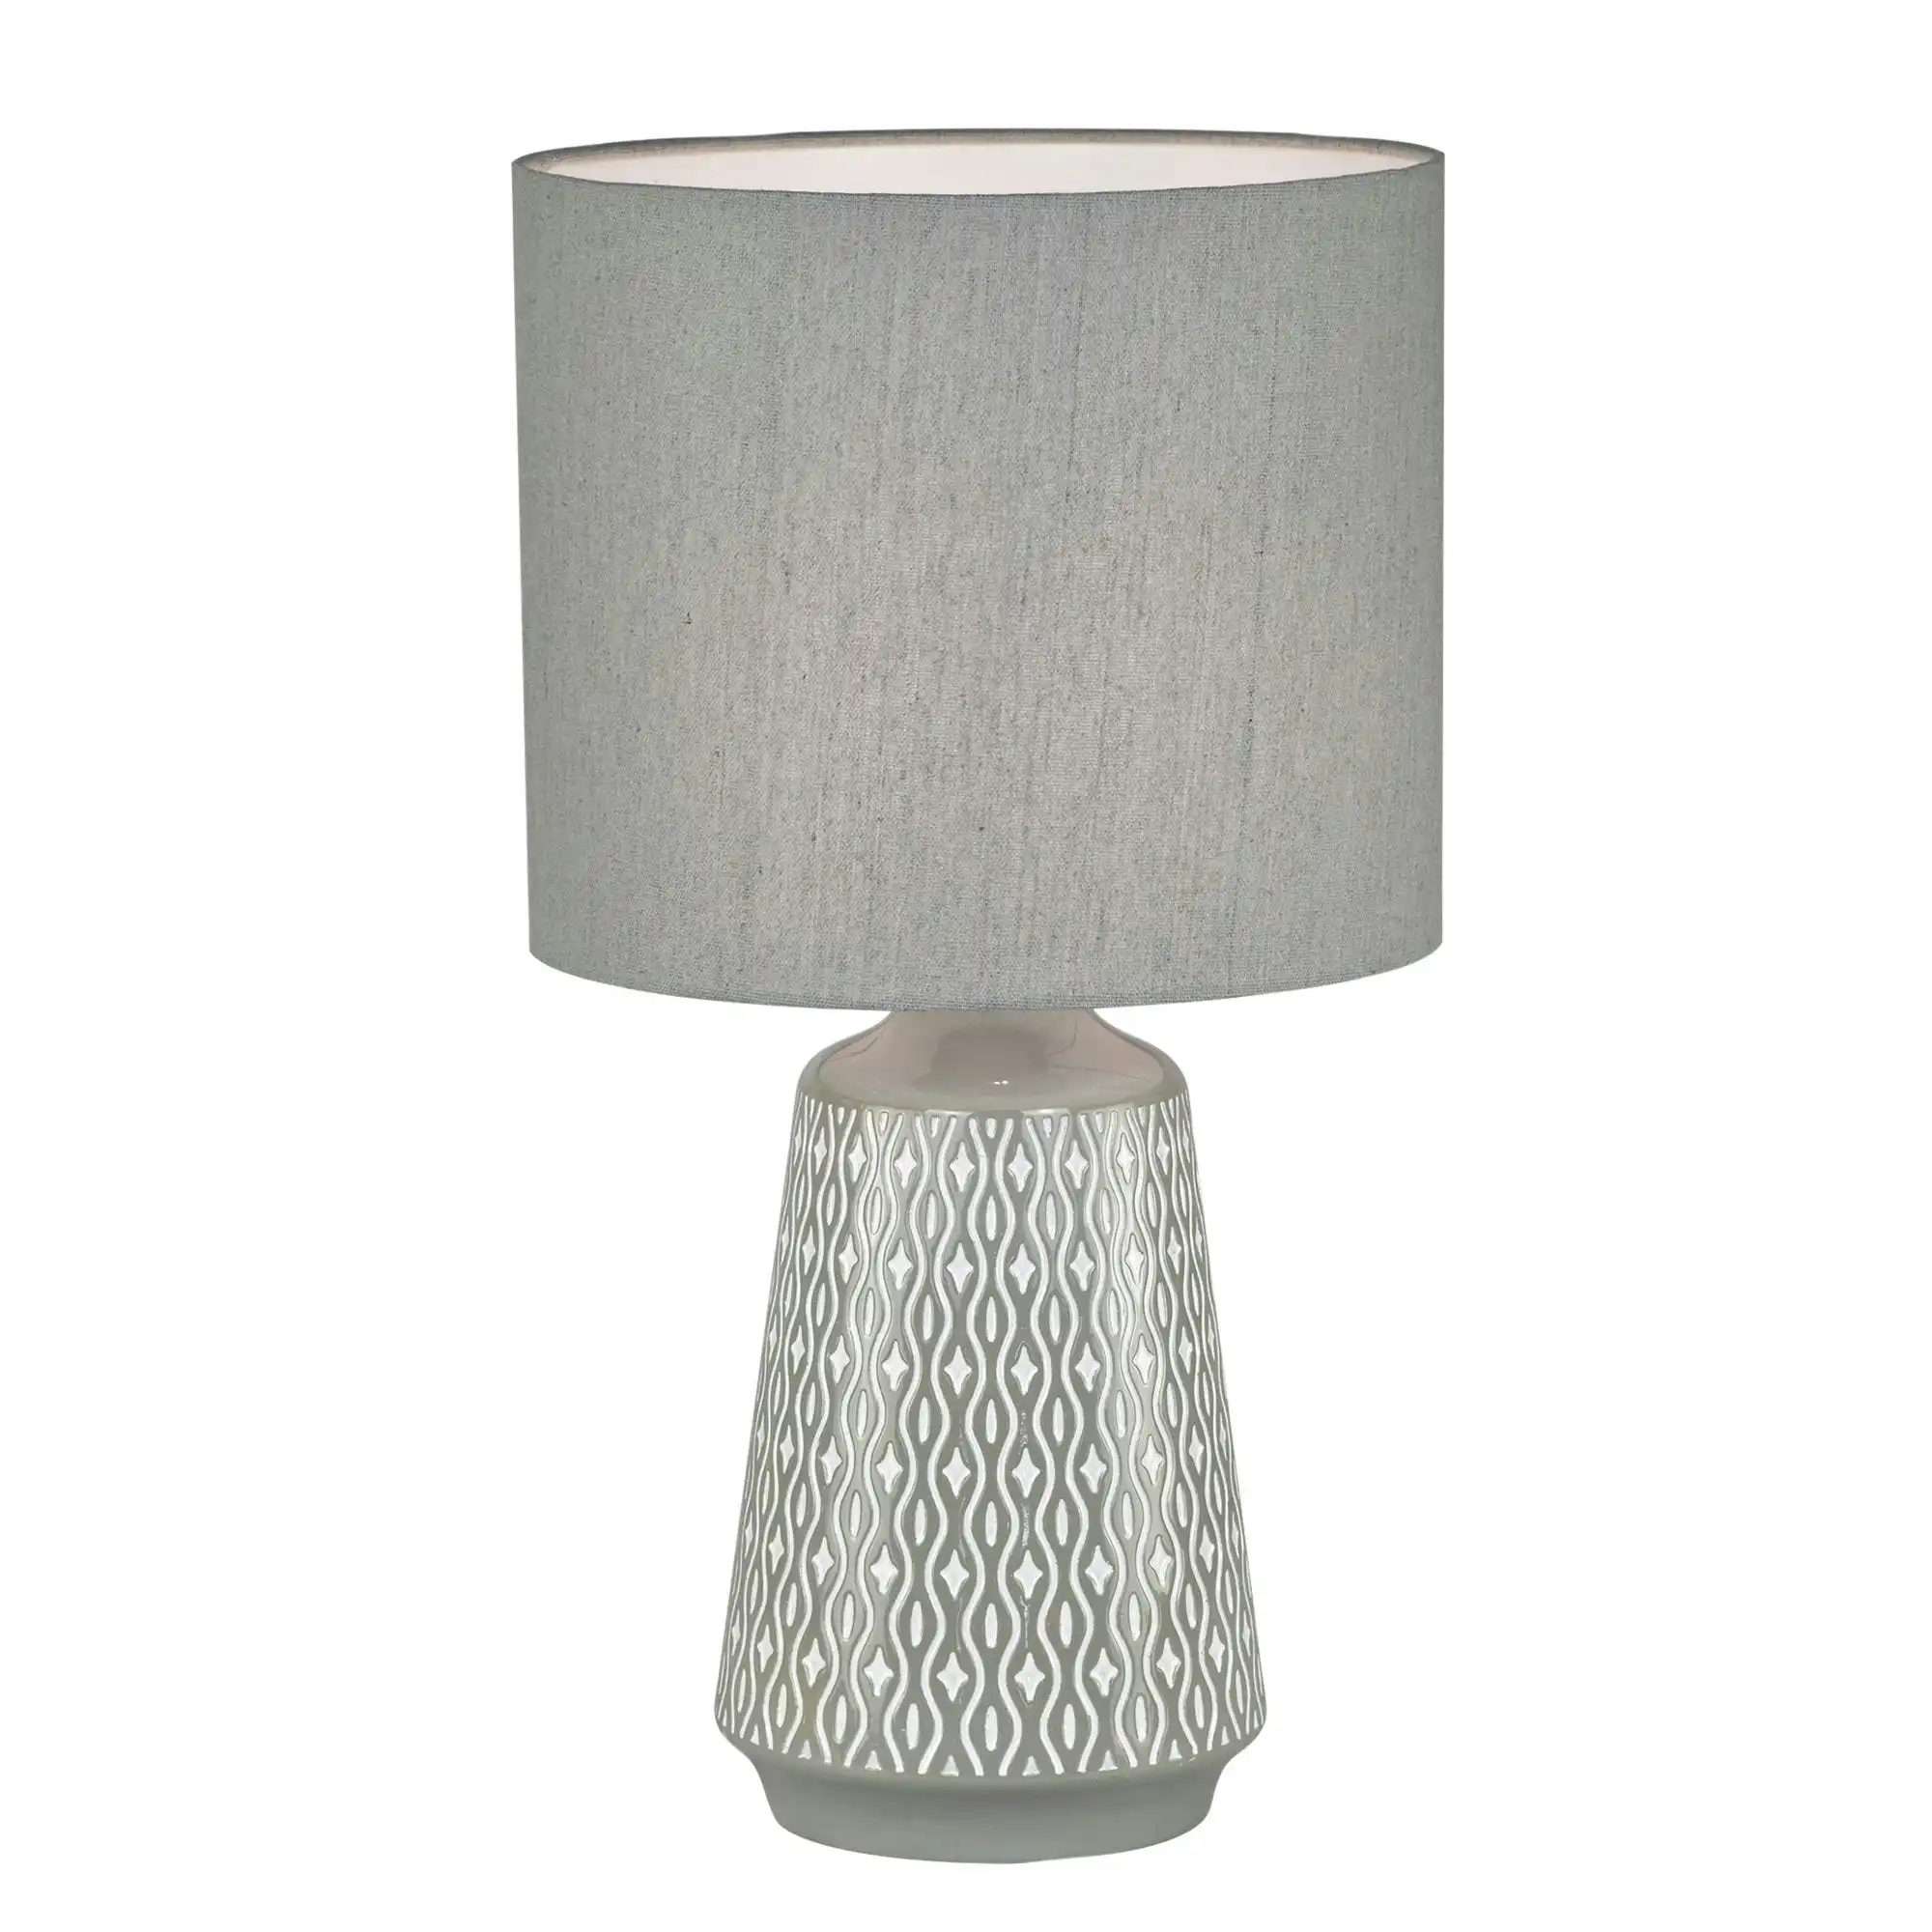 MOANA Ceramic Table Lamp with Shade Grey